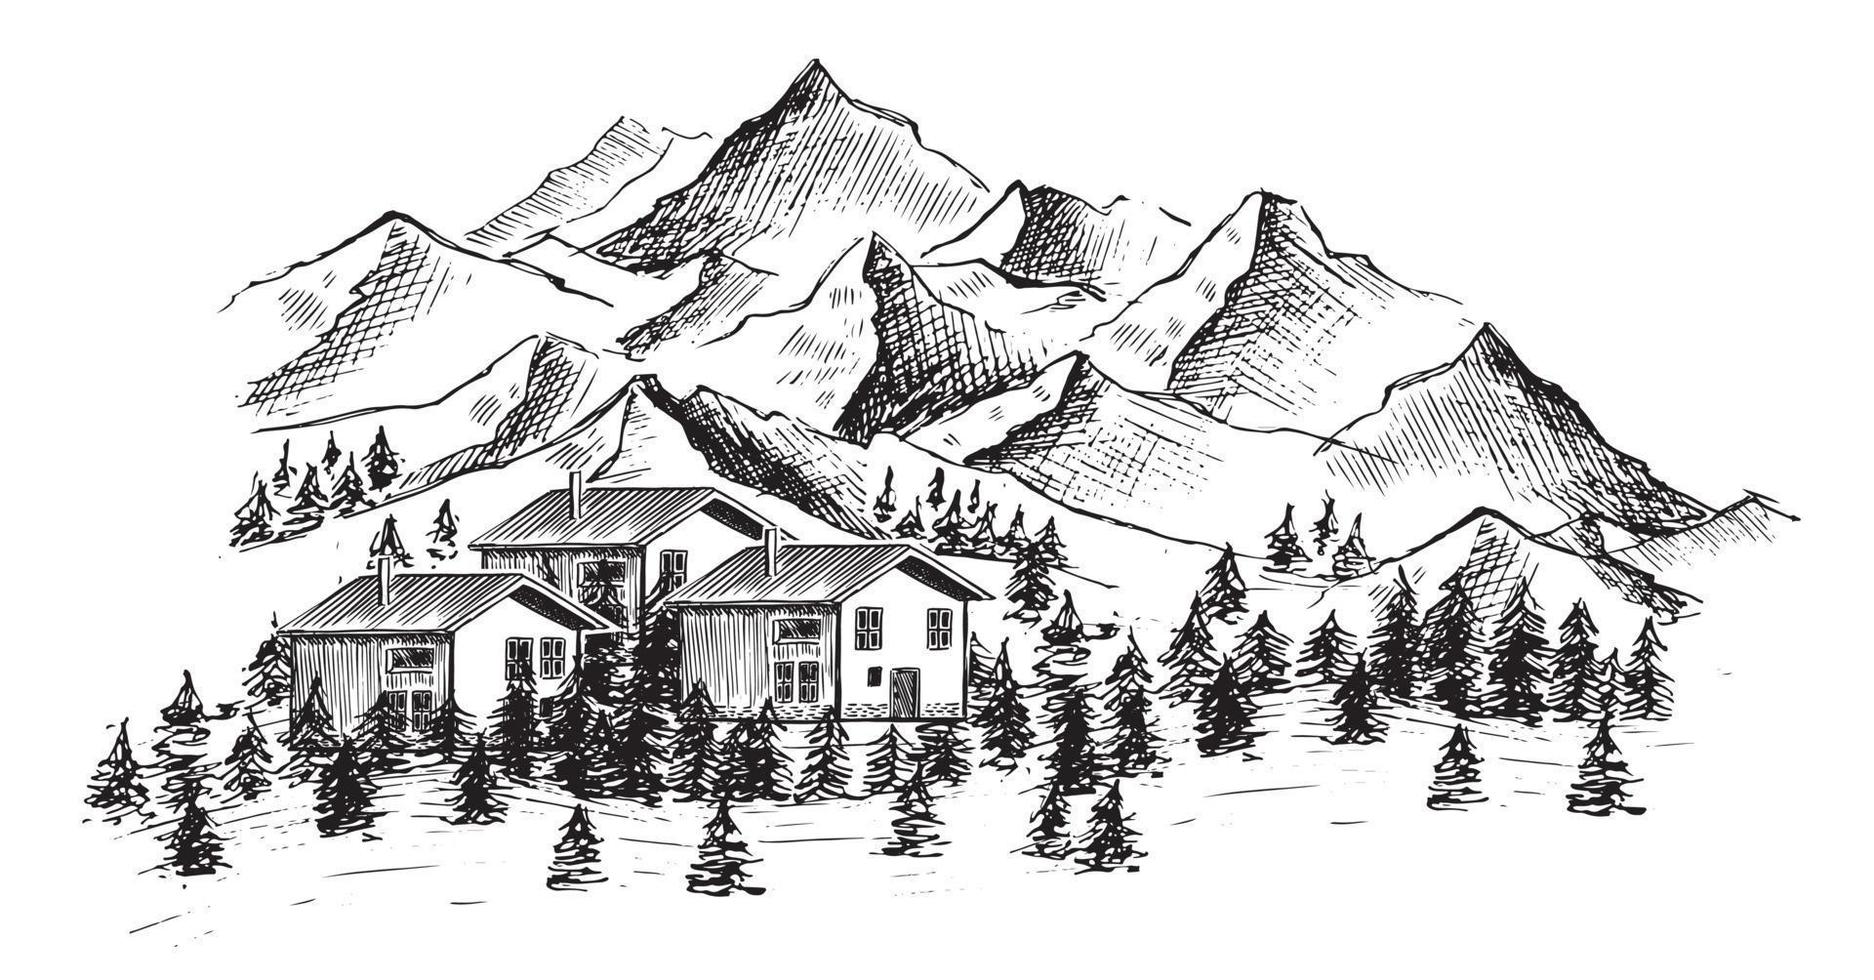 paisagem de montanha, ilustração desenhada à mão vetor